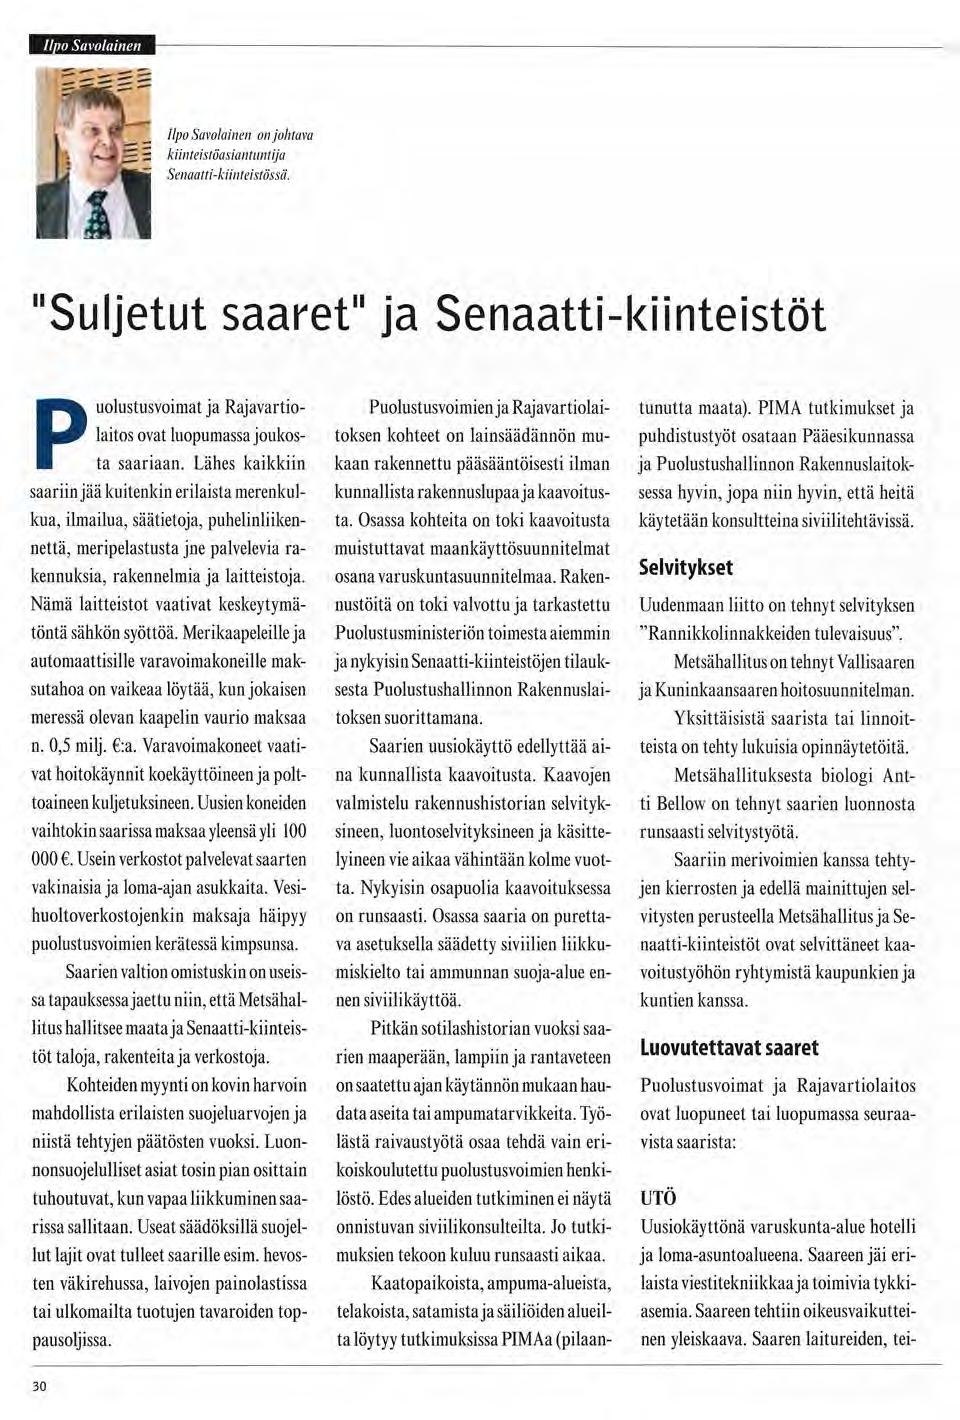 h Ife i i i Ilpo Savolainen on johtava kiinteistöasiantuntija Senaatti-kiinteistössä. "Suljetut saaret" ja Senaatti-kiinteistöt Puolustusvoimat ja Rajavartiolaitos ovat luopumassa joukosta saariaan.